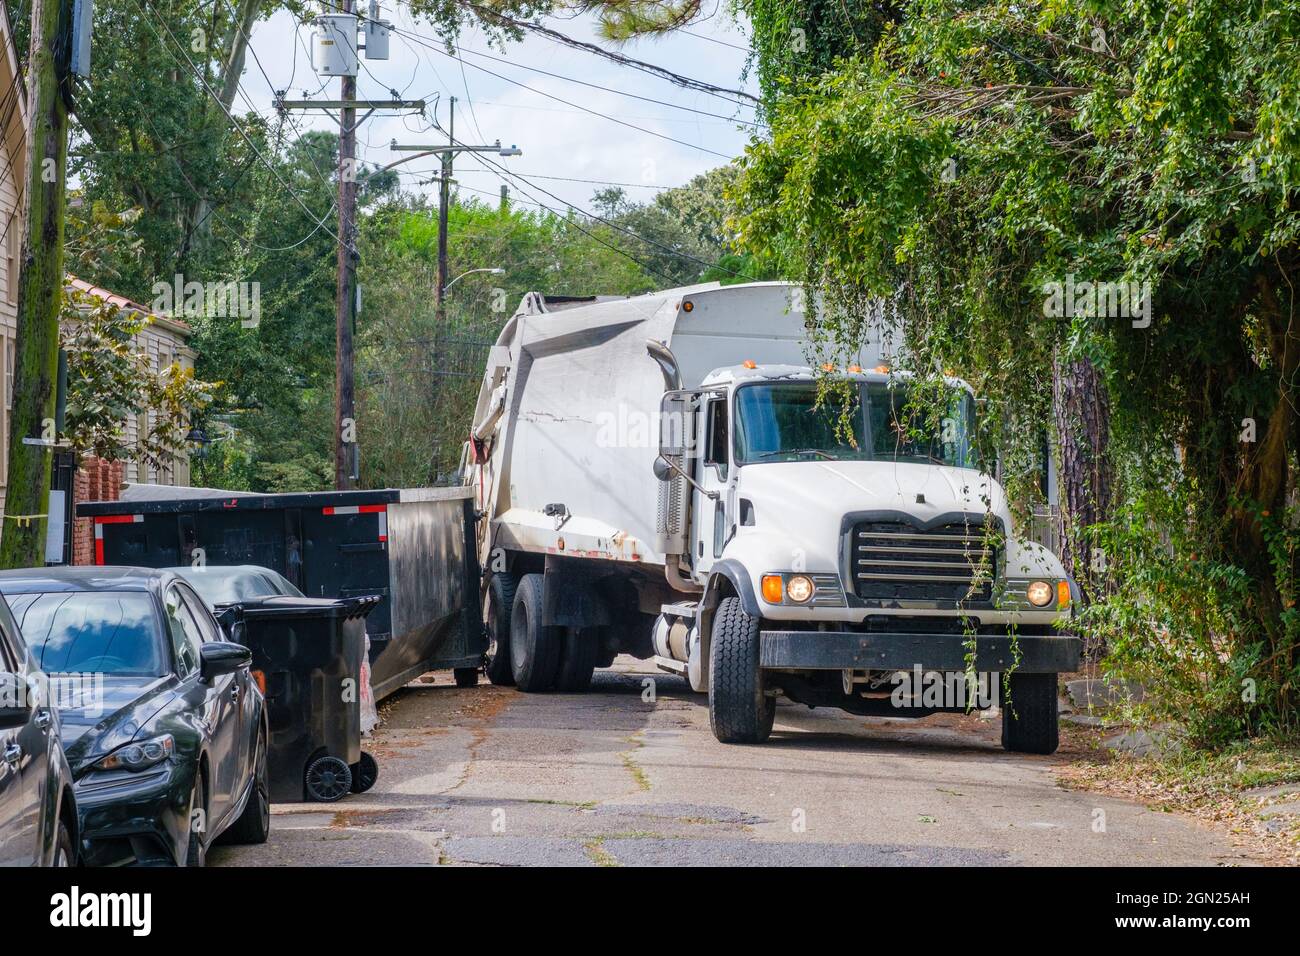 NEW ORLEANS, LA - 21. OKTOBER 2020: Ein Sanitär-LKW steckt zwischen einem Müllcontainer und einem geparkten Auto in einem Uptown-Viertel Stockfoto